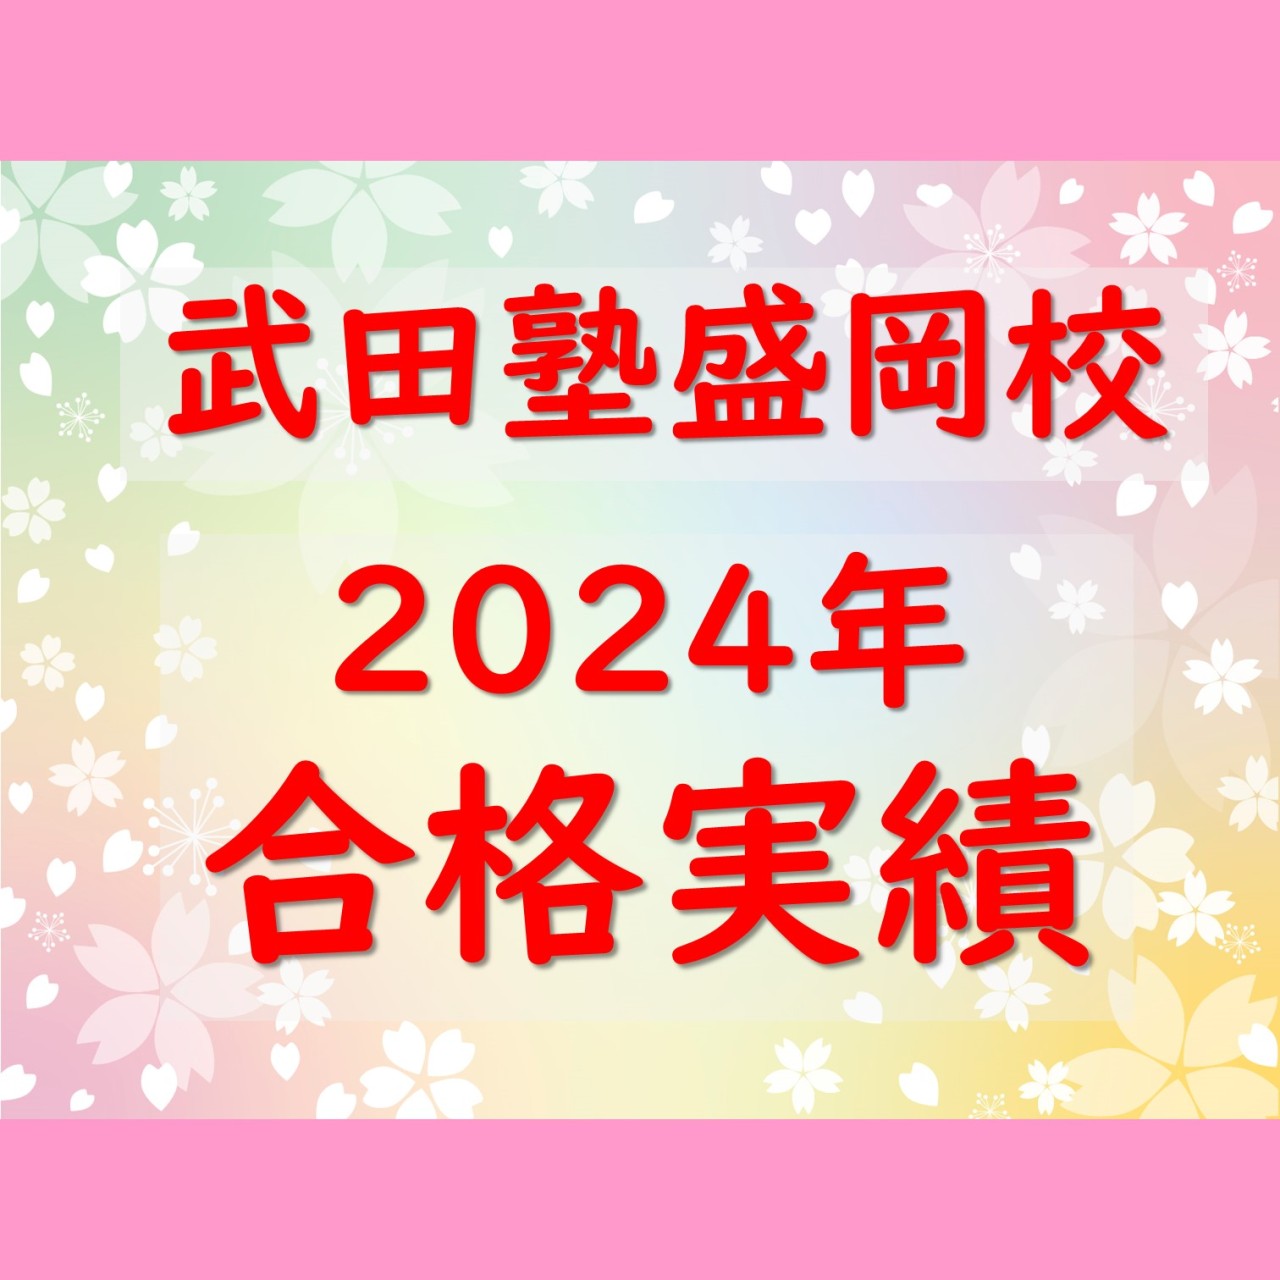 【武田塾 盛岡校】2024年 合格実績についてお伝えします！